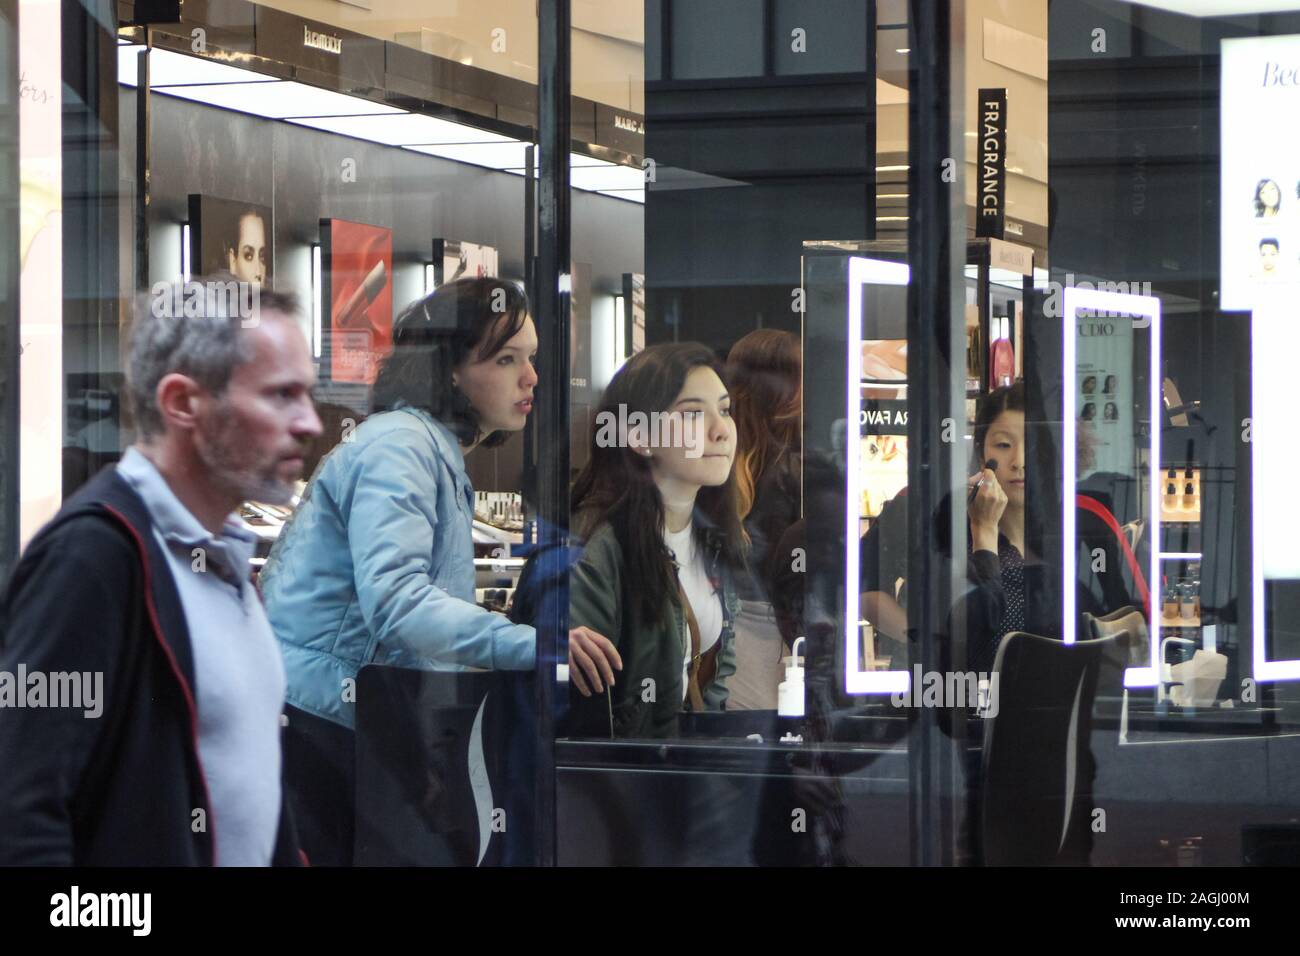 Junge Frauen oder Mädchen im Teenager-Alter unter beauty Store durch Schaufenster gesehen. Mann mittleren Alters, vorbei an der Powell Street, San Francisco, USA. Stockfoto